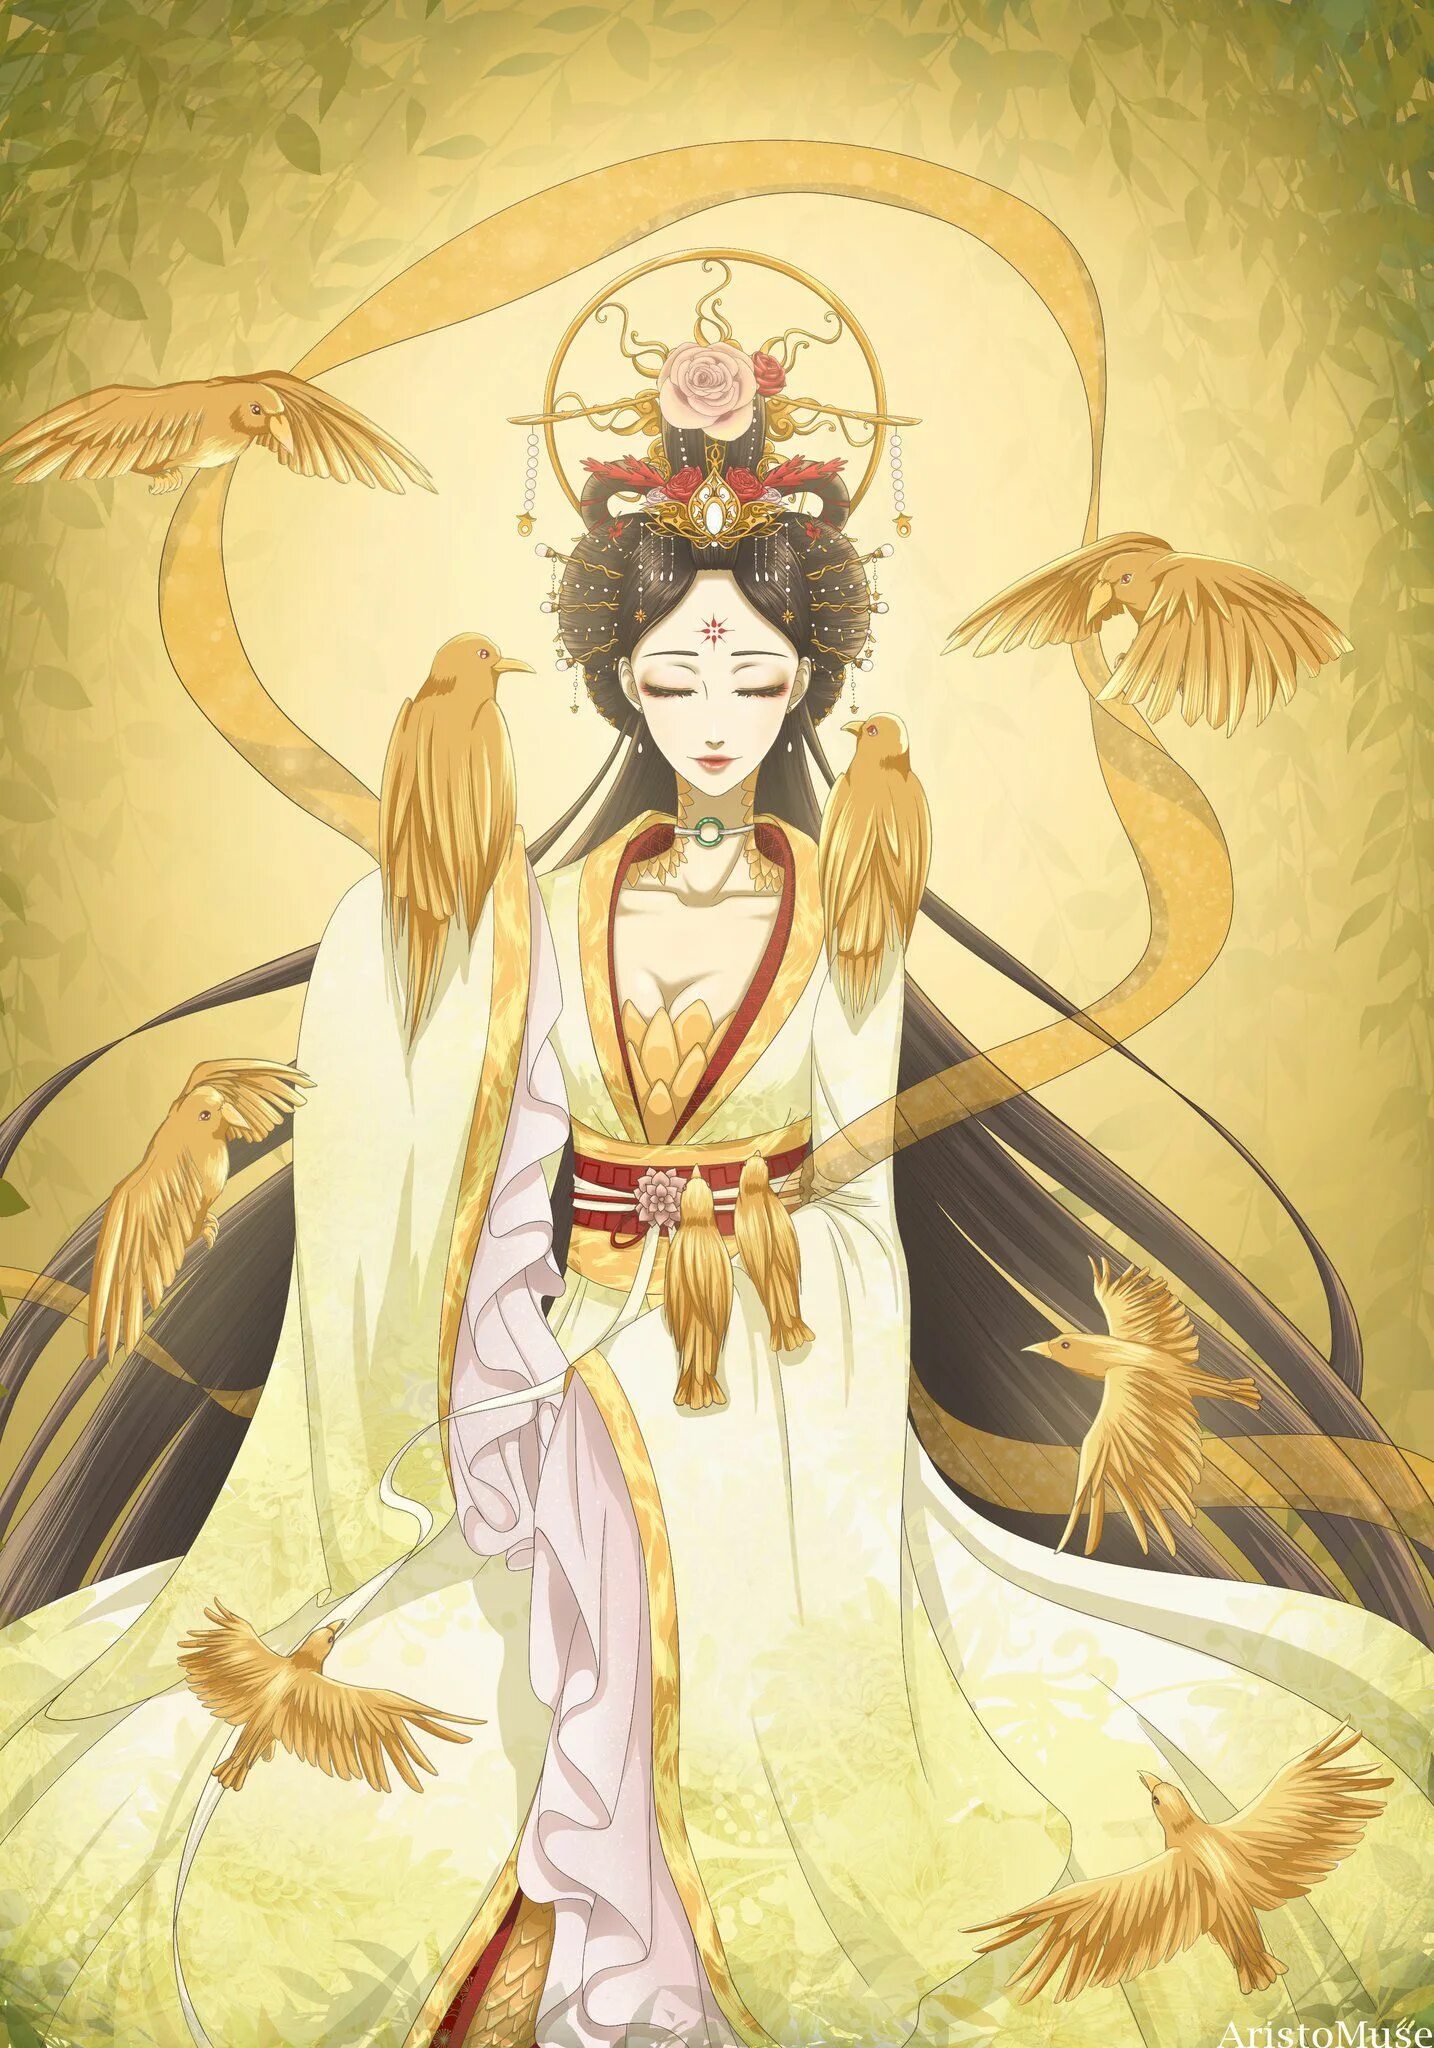 Taming the sun goddess. Китайская богиня Сиванму. Даосская богиня Сиванму. Си Ван му древняя богиня Китая. Богиня Запада Сиванму.